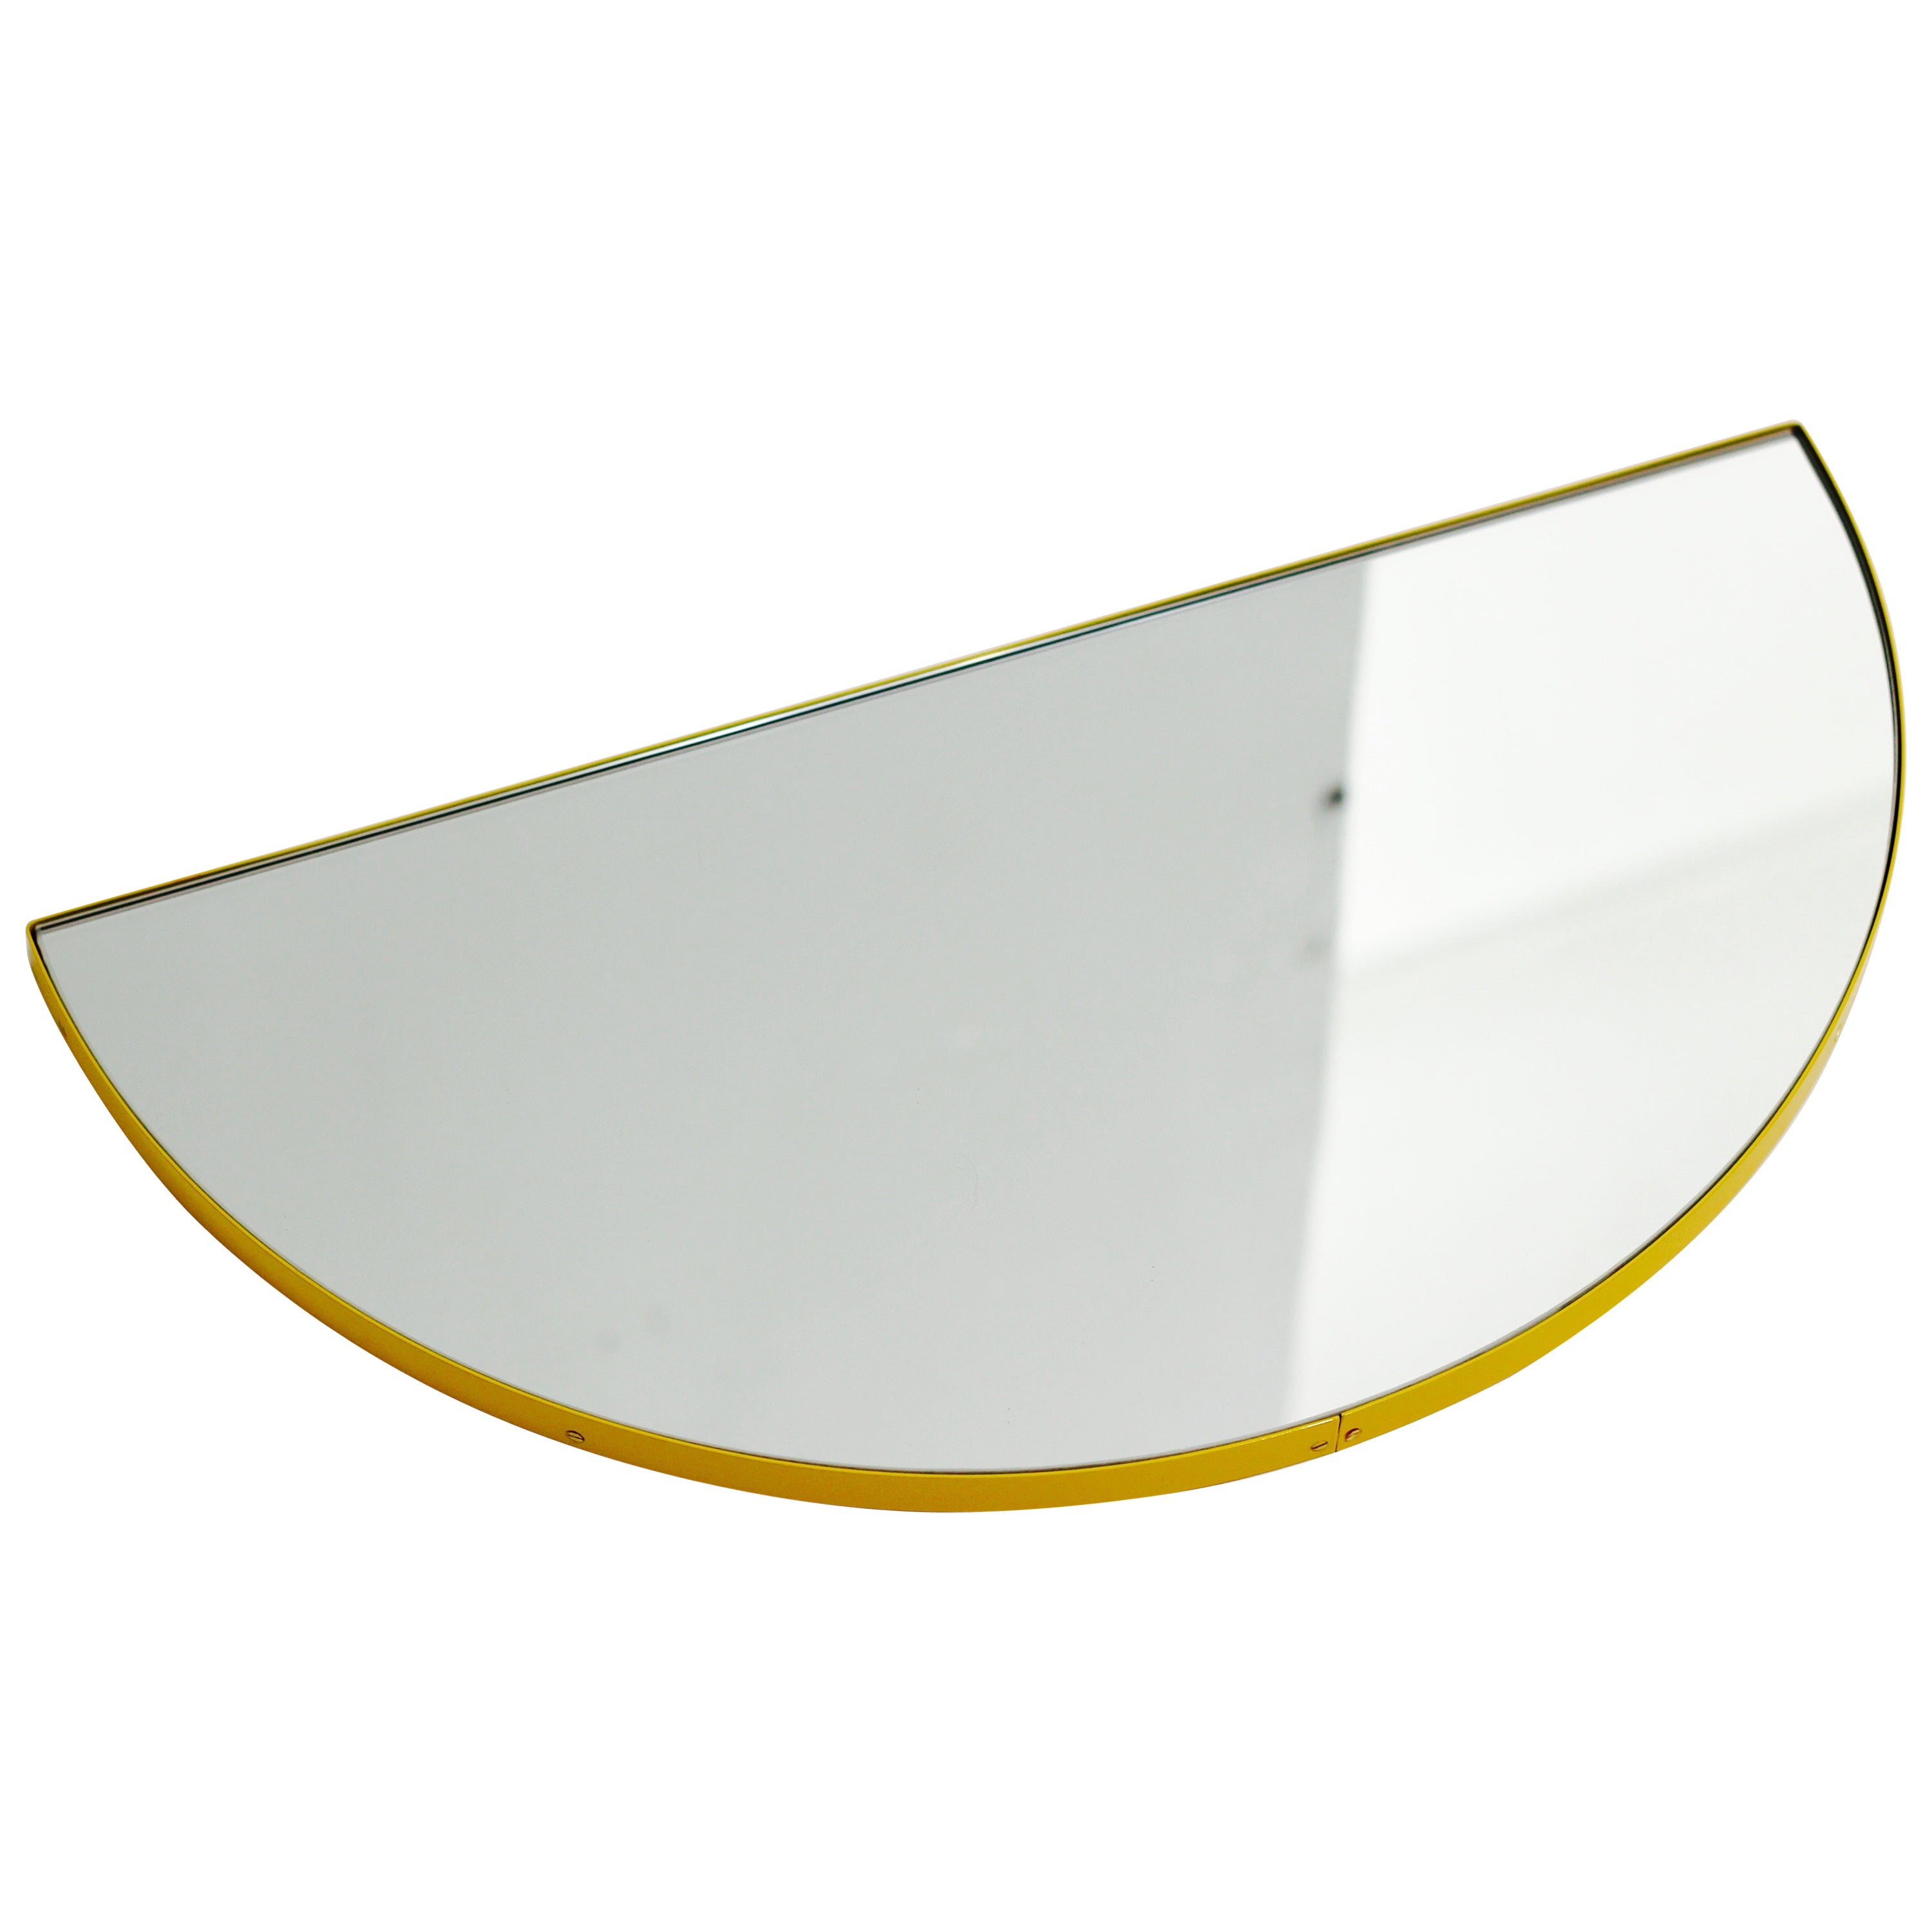 Luna Semicircular Minimalist Mirror with a Yellow Frame, XL